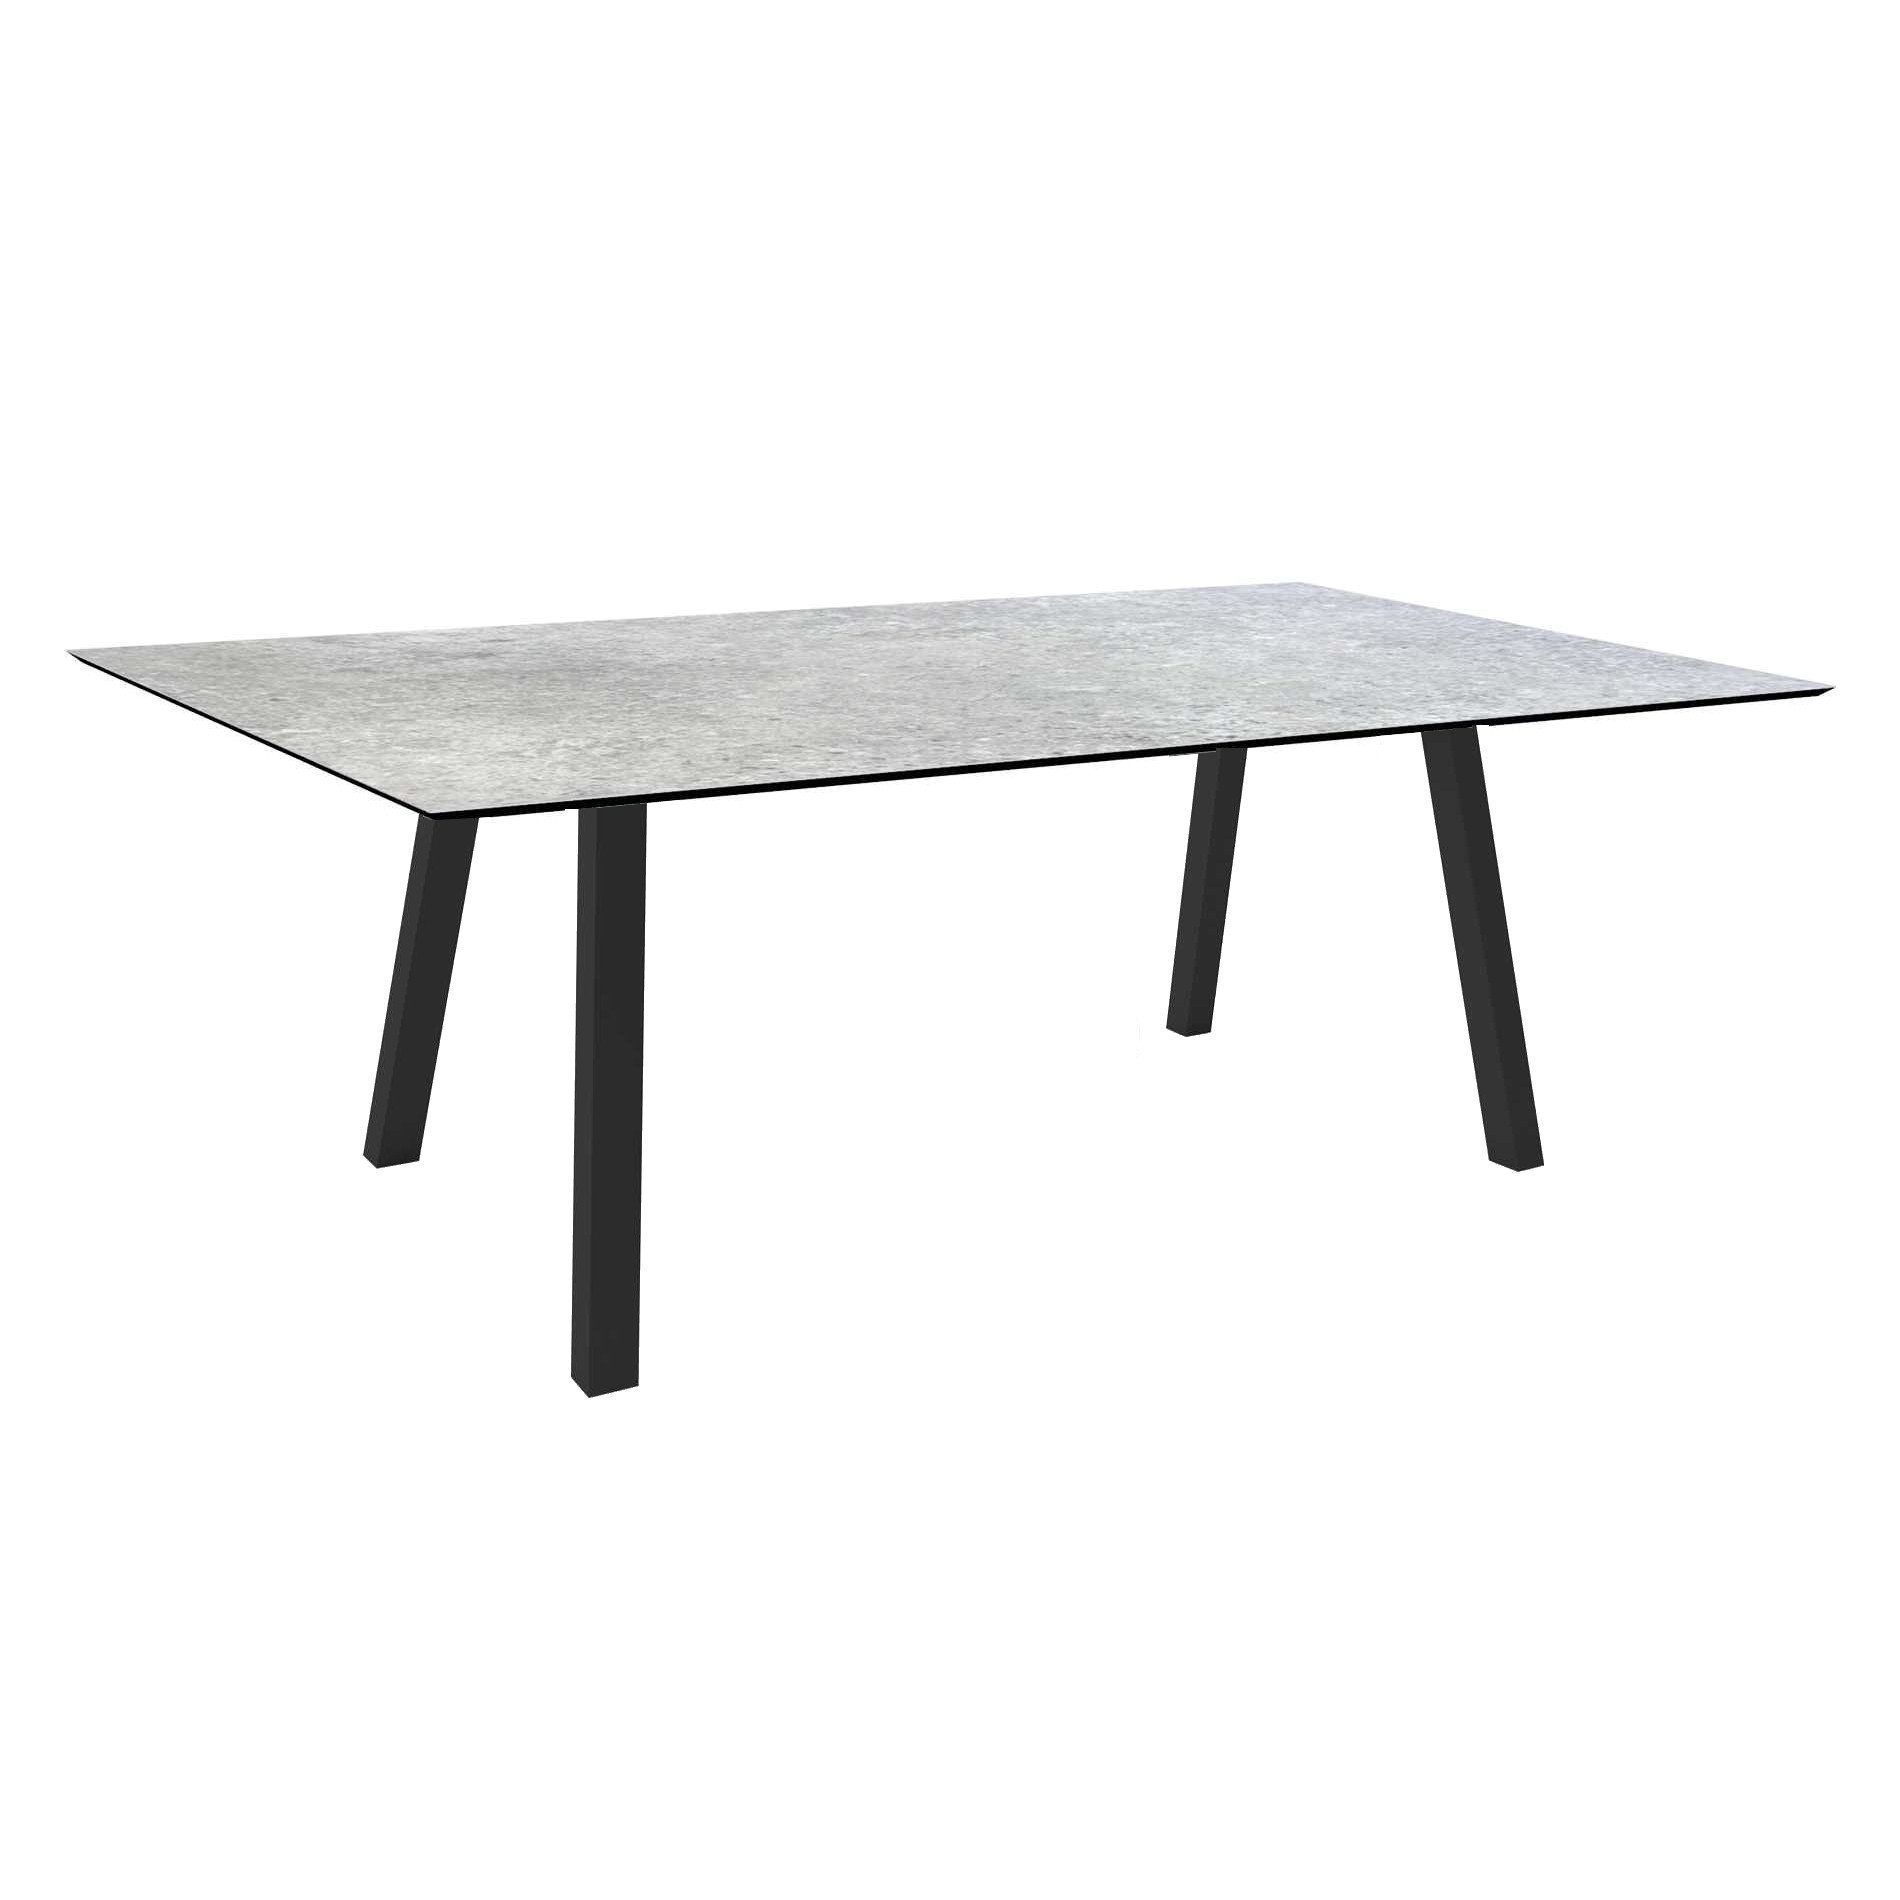 Stern Tisch "Interno", Größe 180x100cm, Alu anthrazit, Vierkantrohr, Tischplatte HPL Vintage Stone